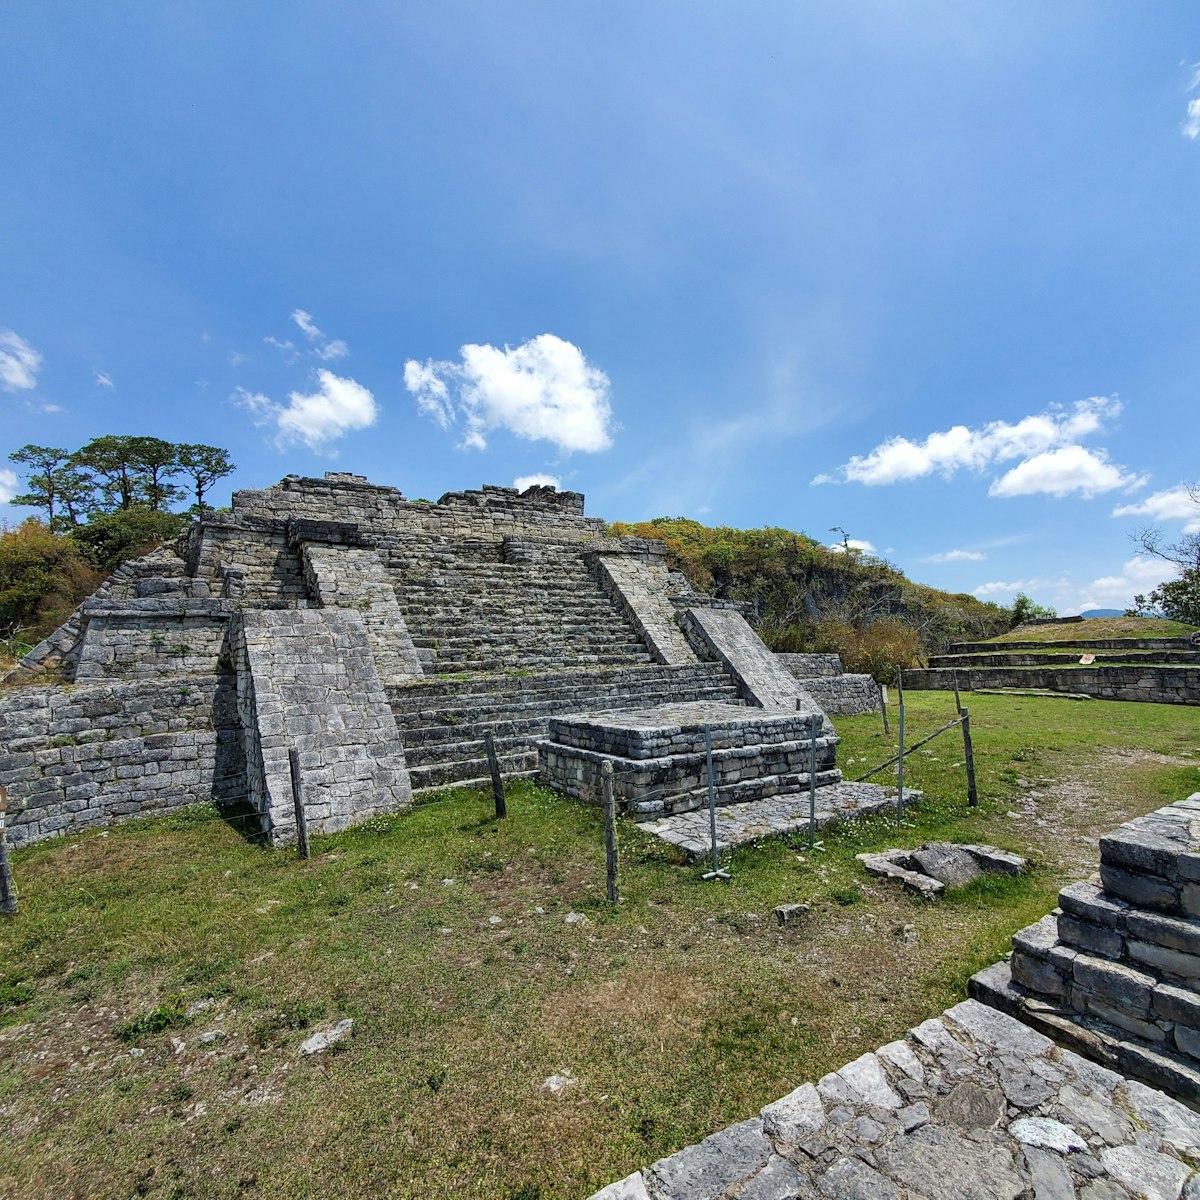 Chinkultic ruins, Chiapas, Mexico.